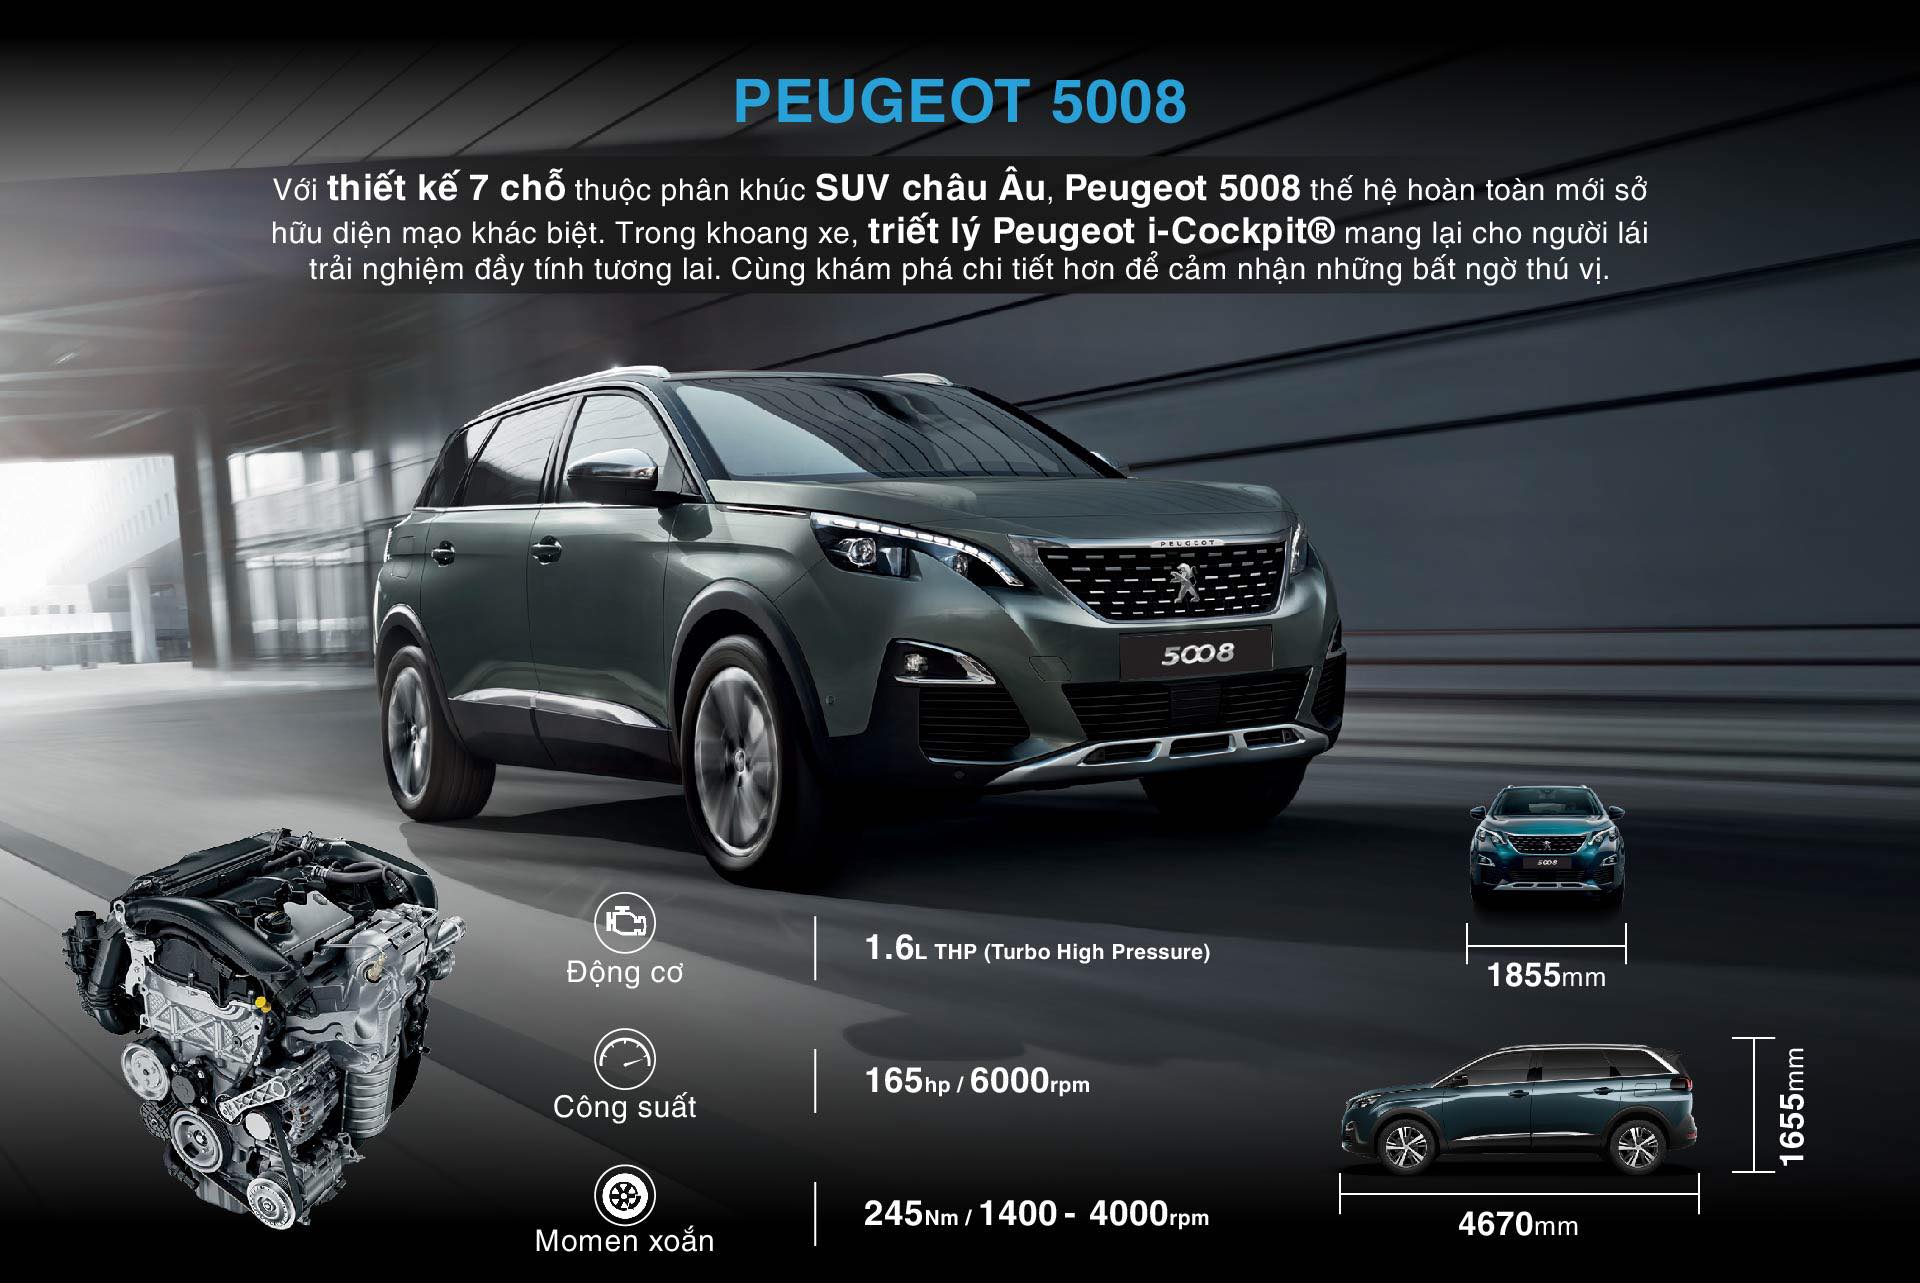 Peugeot Hải Phòng đánh giá xe Peugeot 5008